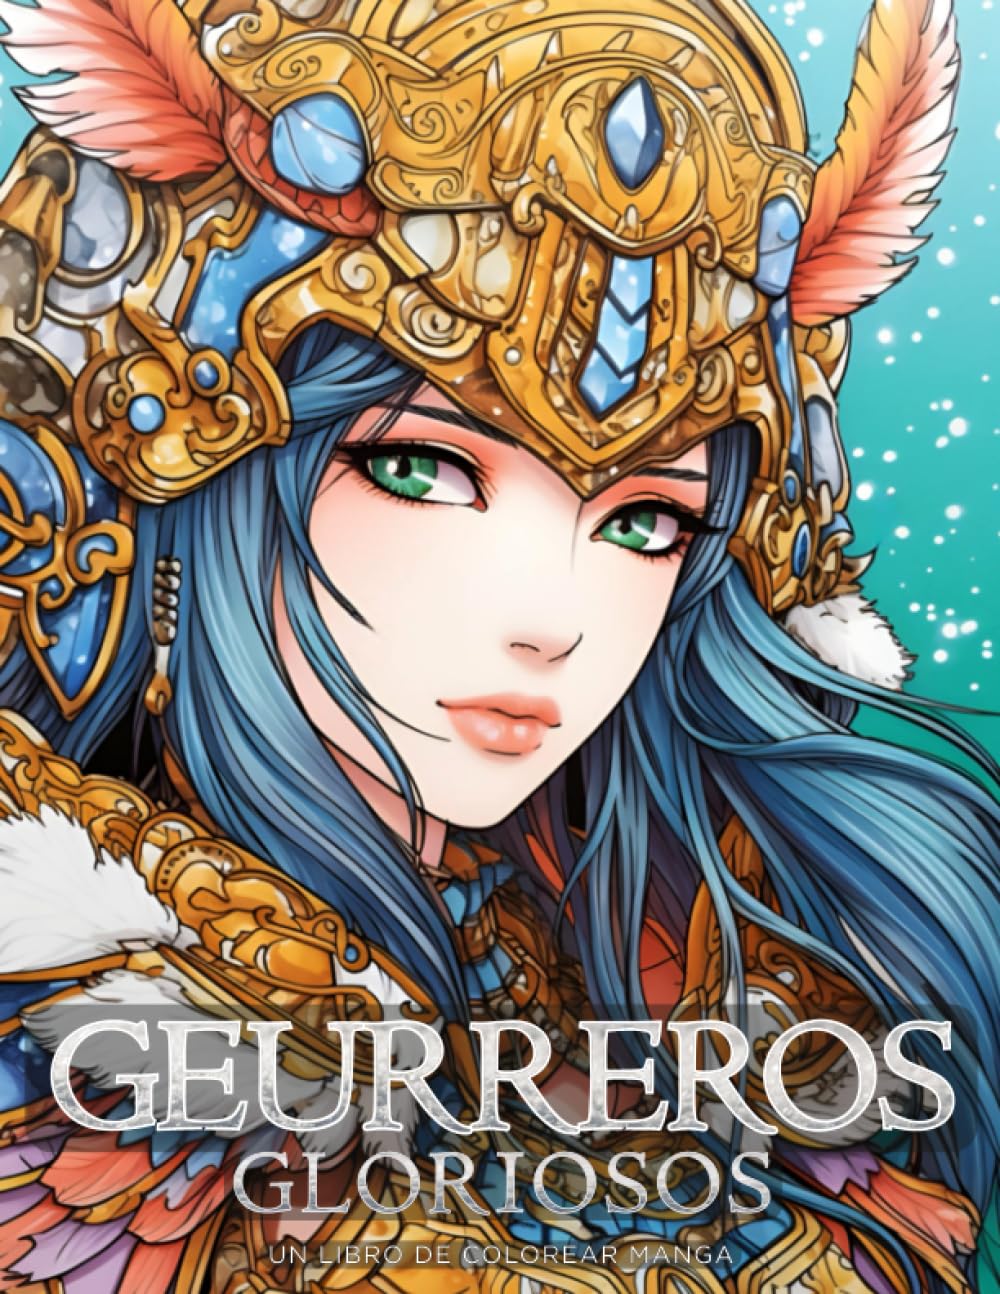 Guerreros Gloriosos - Un Libro de Colorear Manga: Hermosos e inspiradores dibujos para colorear de anime (Libros para colorear manga y anime) (Spanish Edition)